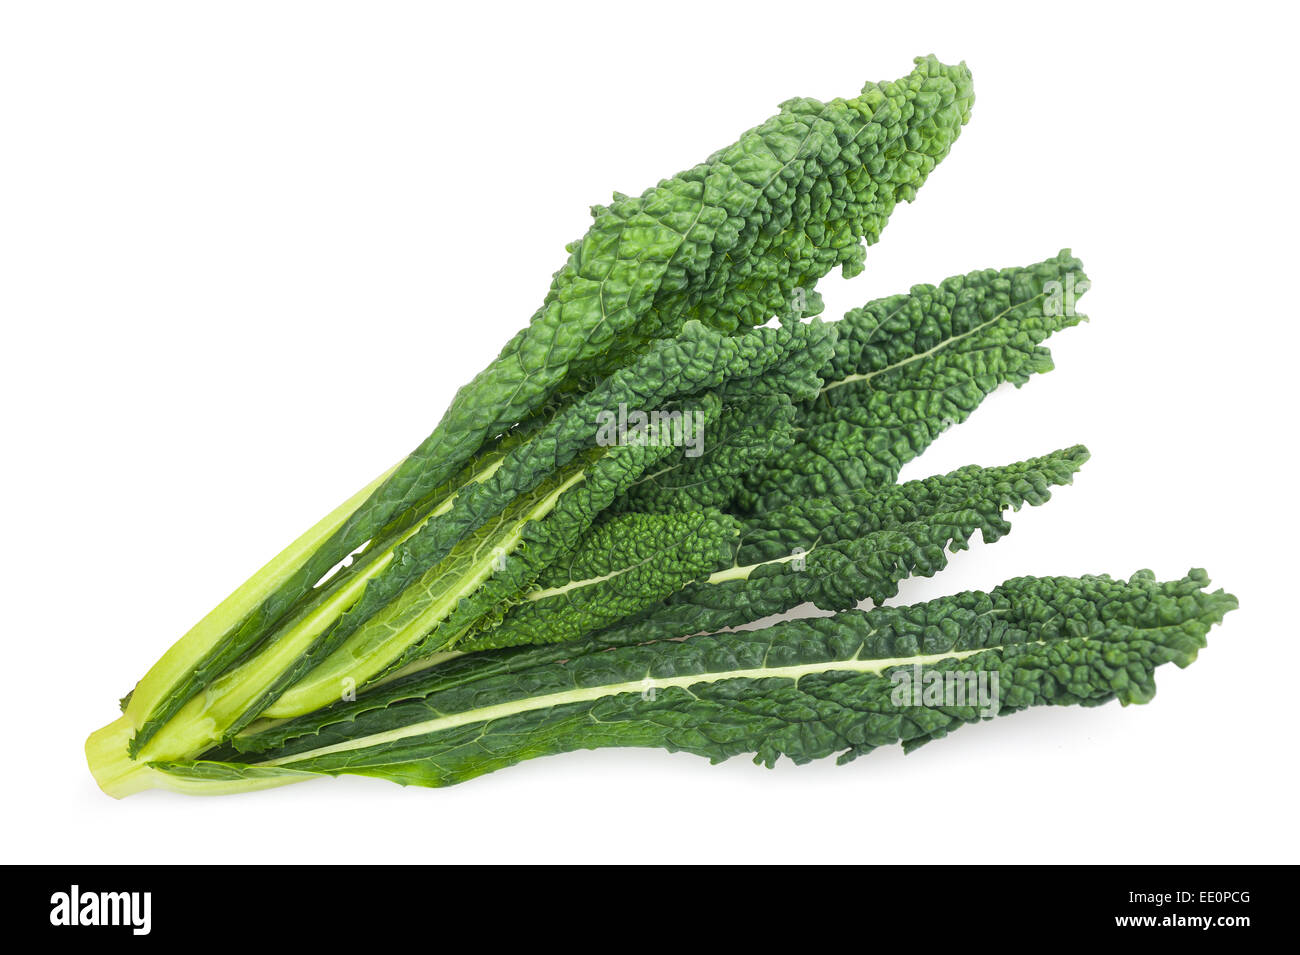 black cabbage, italian kale isolated on white background Stock Photo